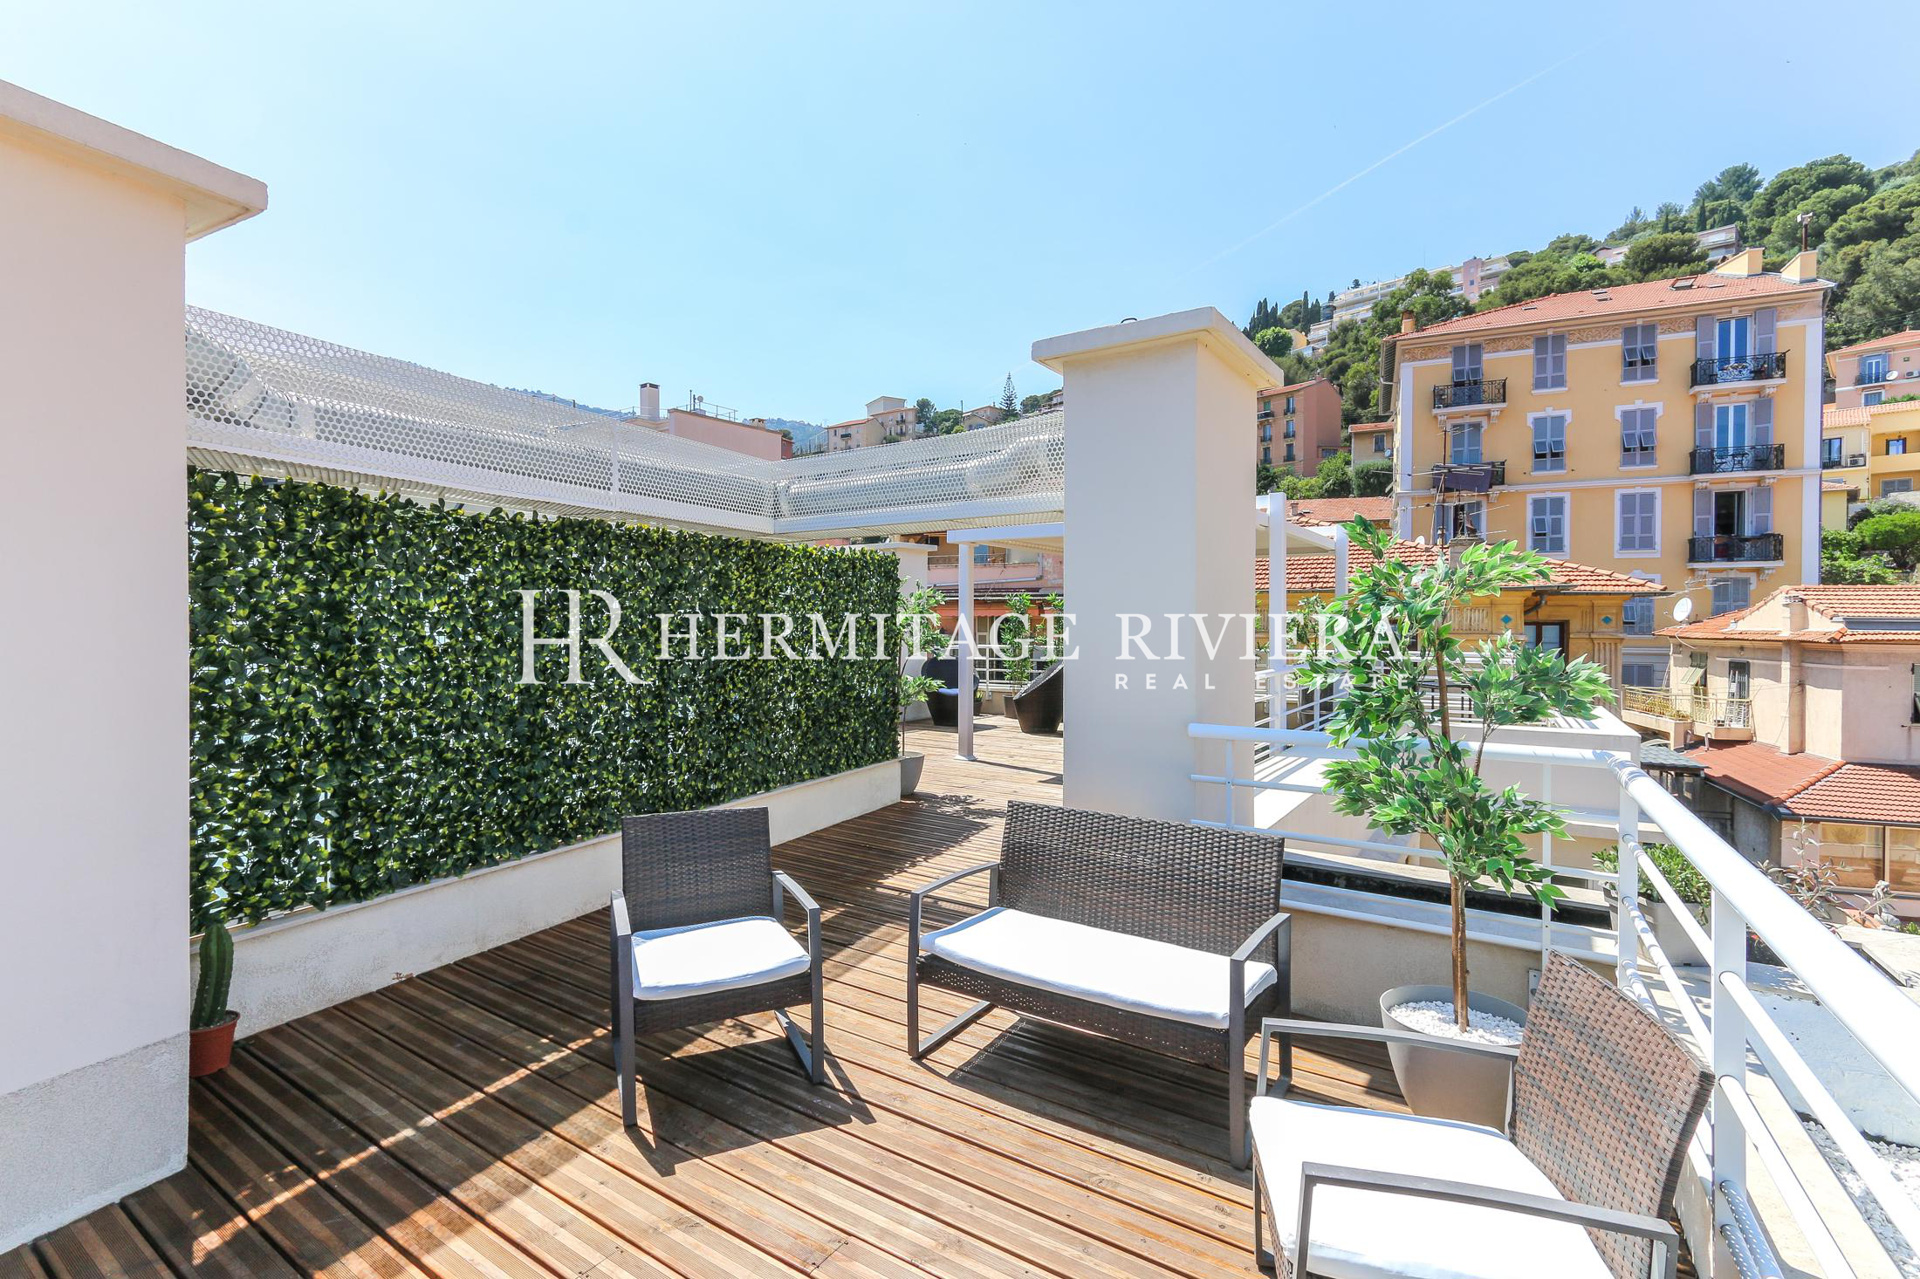 Penthouse-duplex rénové avec vue sur Monaco (image 23)